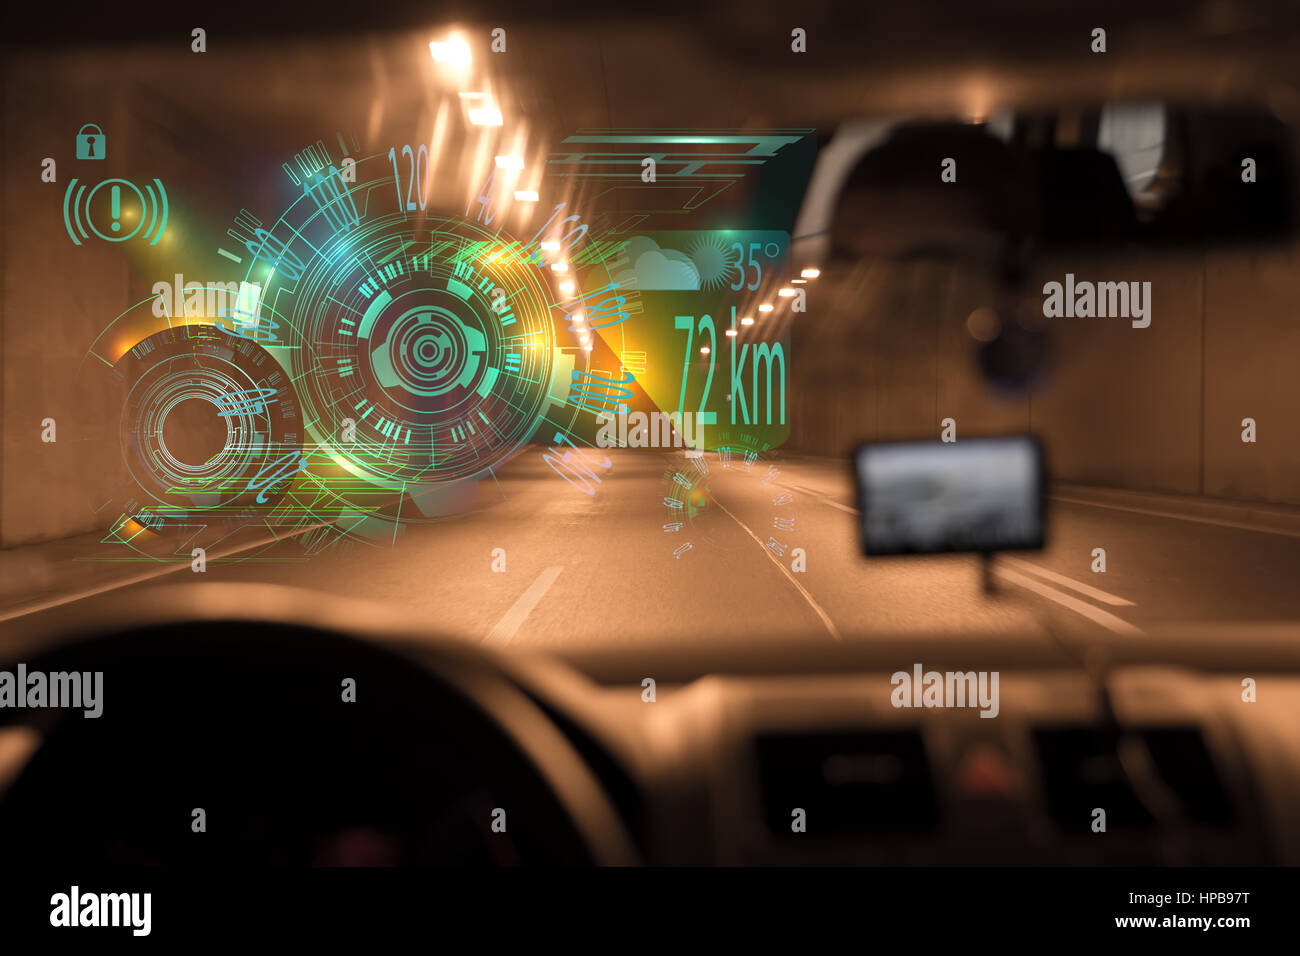 Auto fahren durch Tunnels Autobahntunnels auf night.car HUD-Übersichtsseite. Futuristische HUD und Infografik Elemente der Benutzeroberfläche. Abstrakte virtuelle Grafik Stockfoto